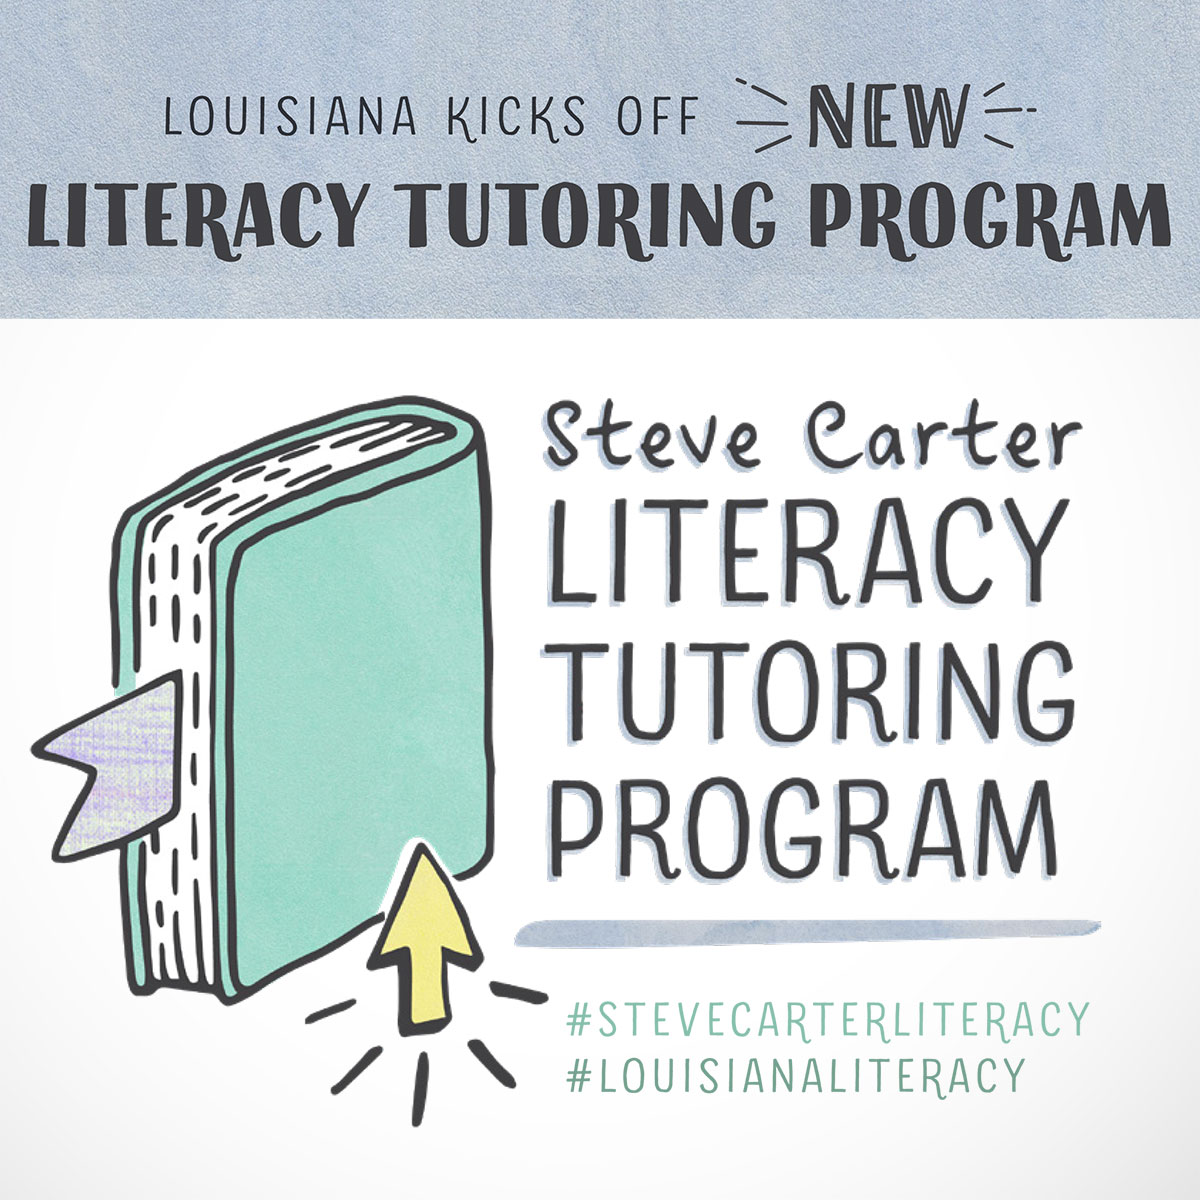 Steve Carter Literacy Tutoring Program